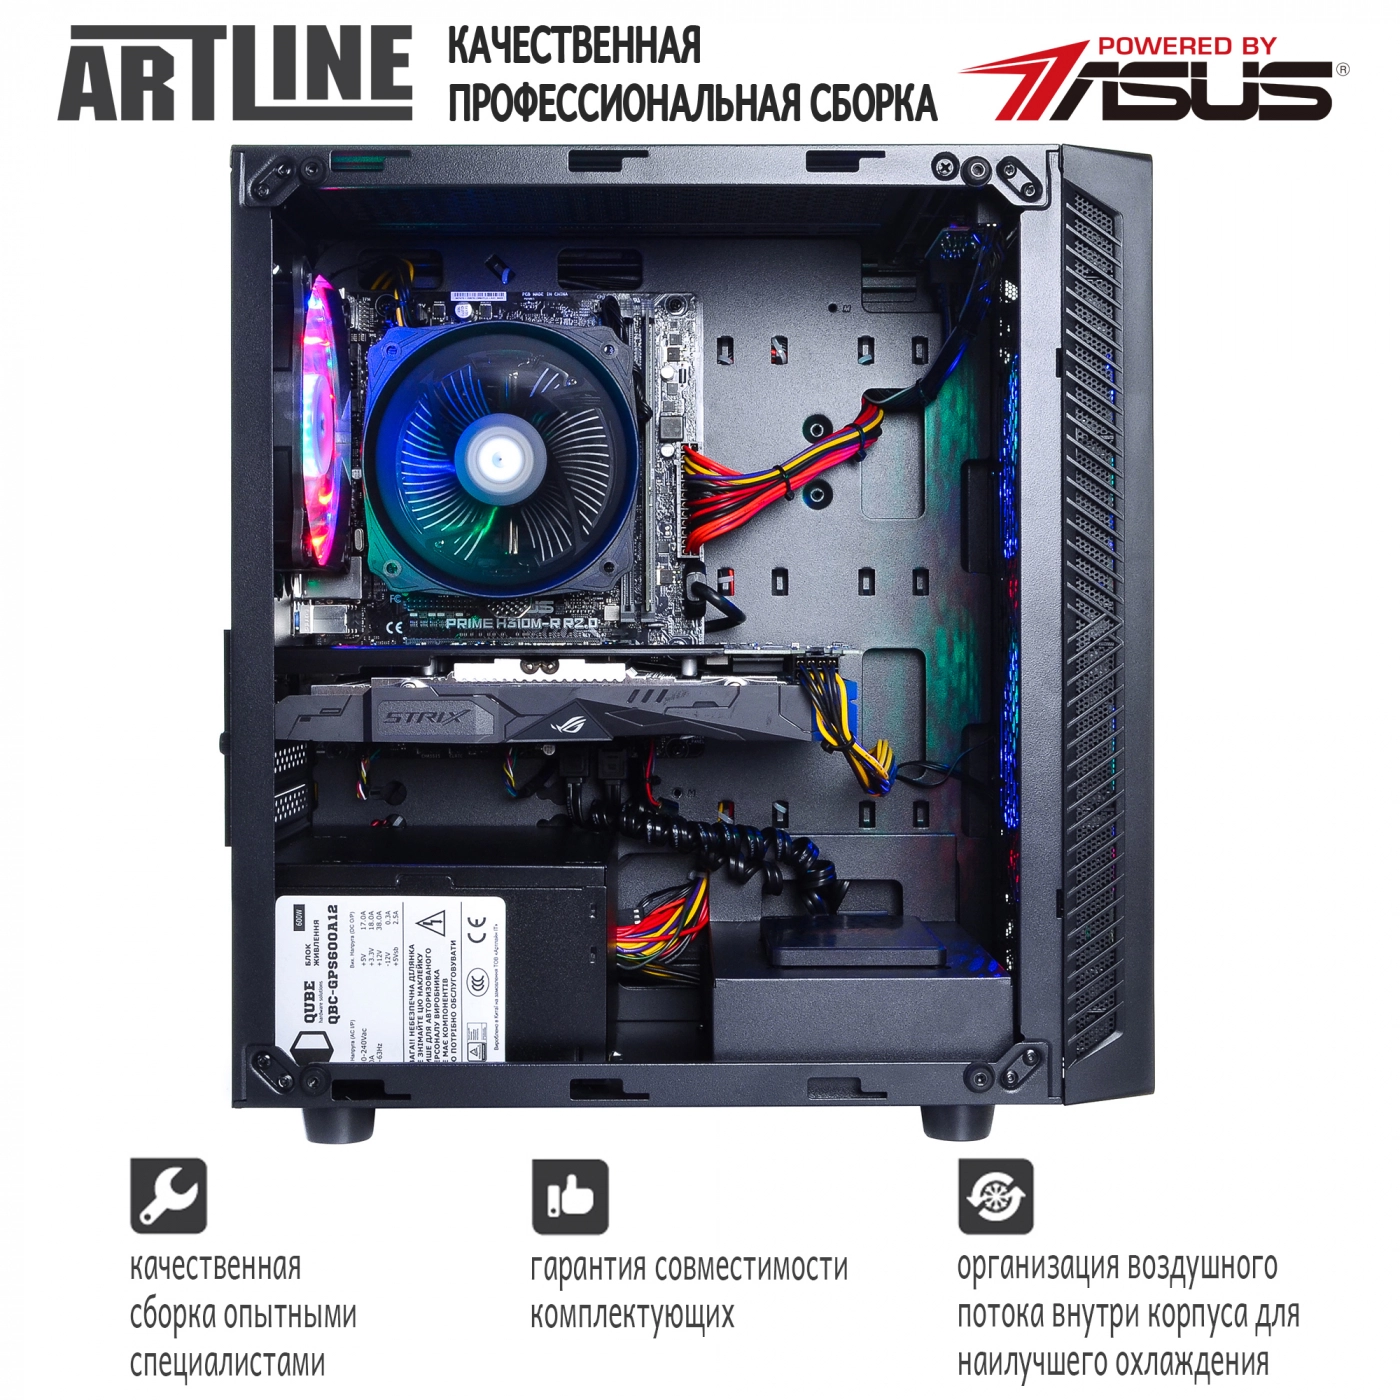 Купить Компьютер ARTLINE Gaming X35v26 - фото 7